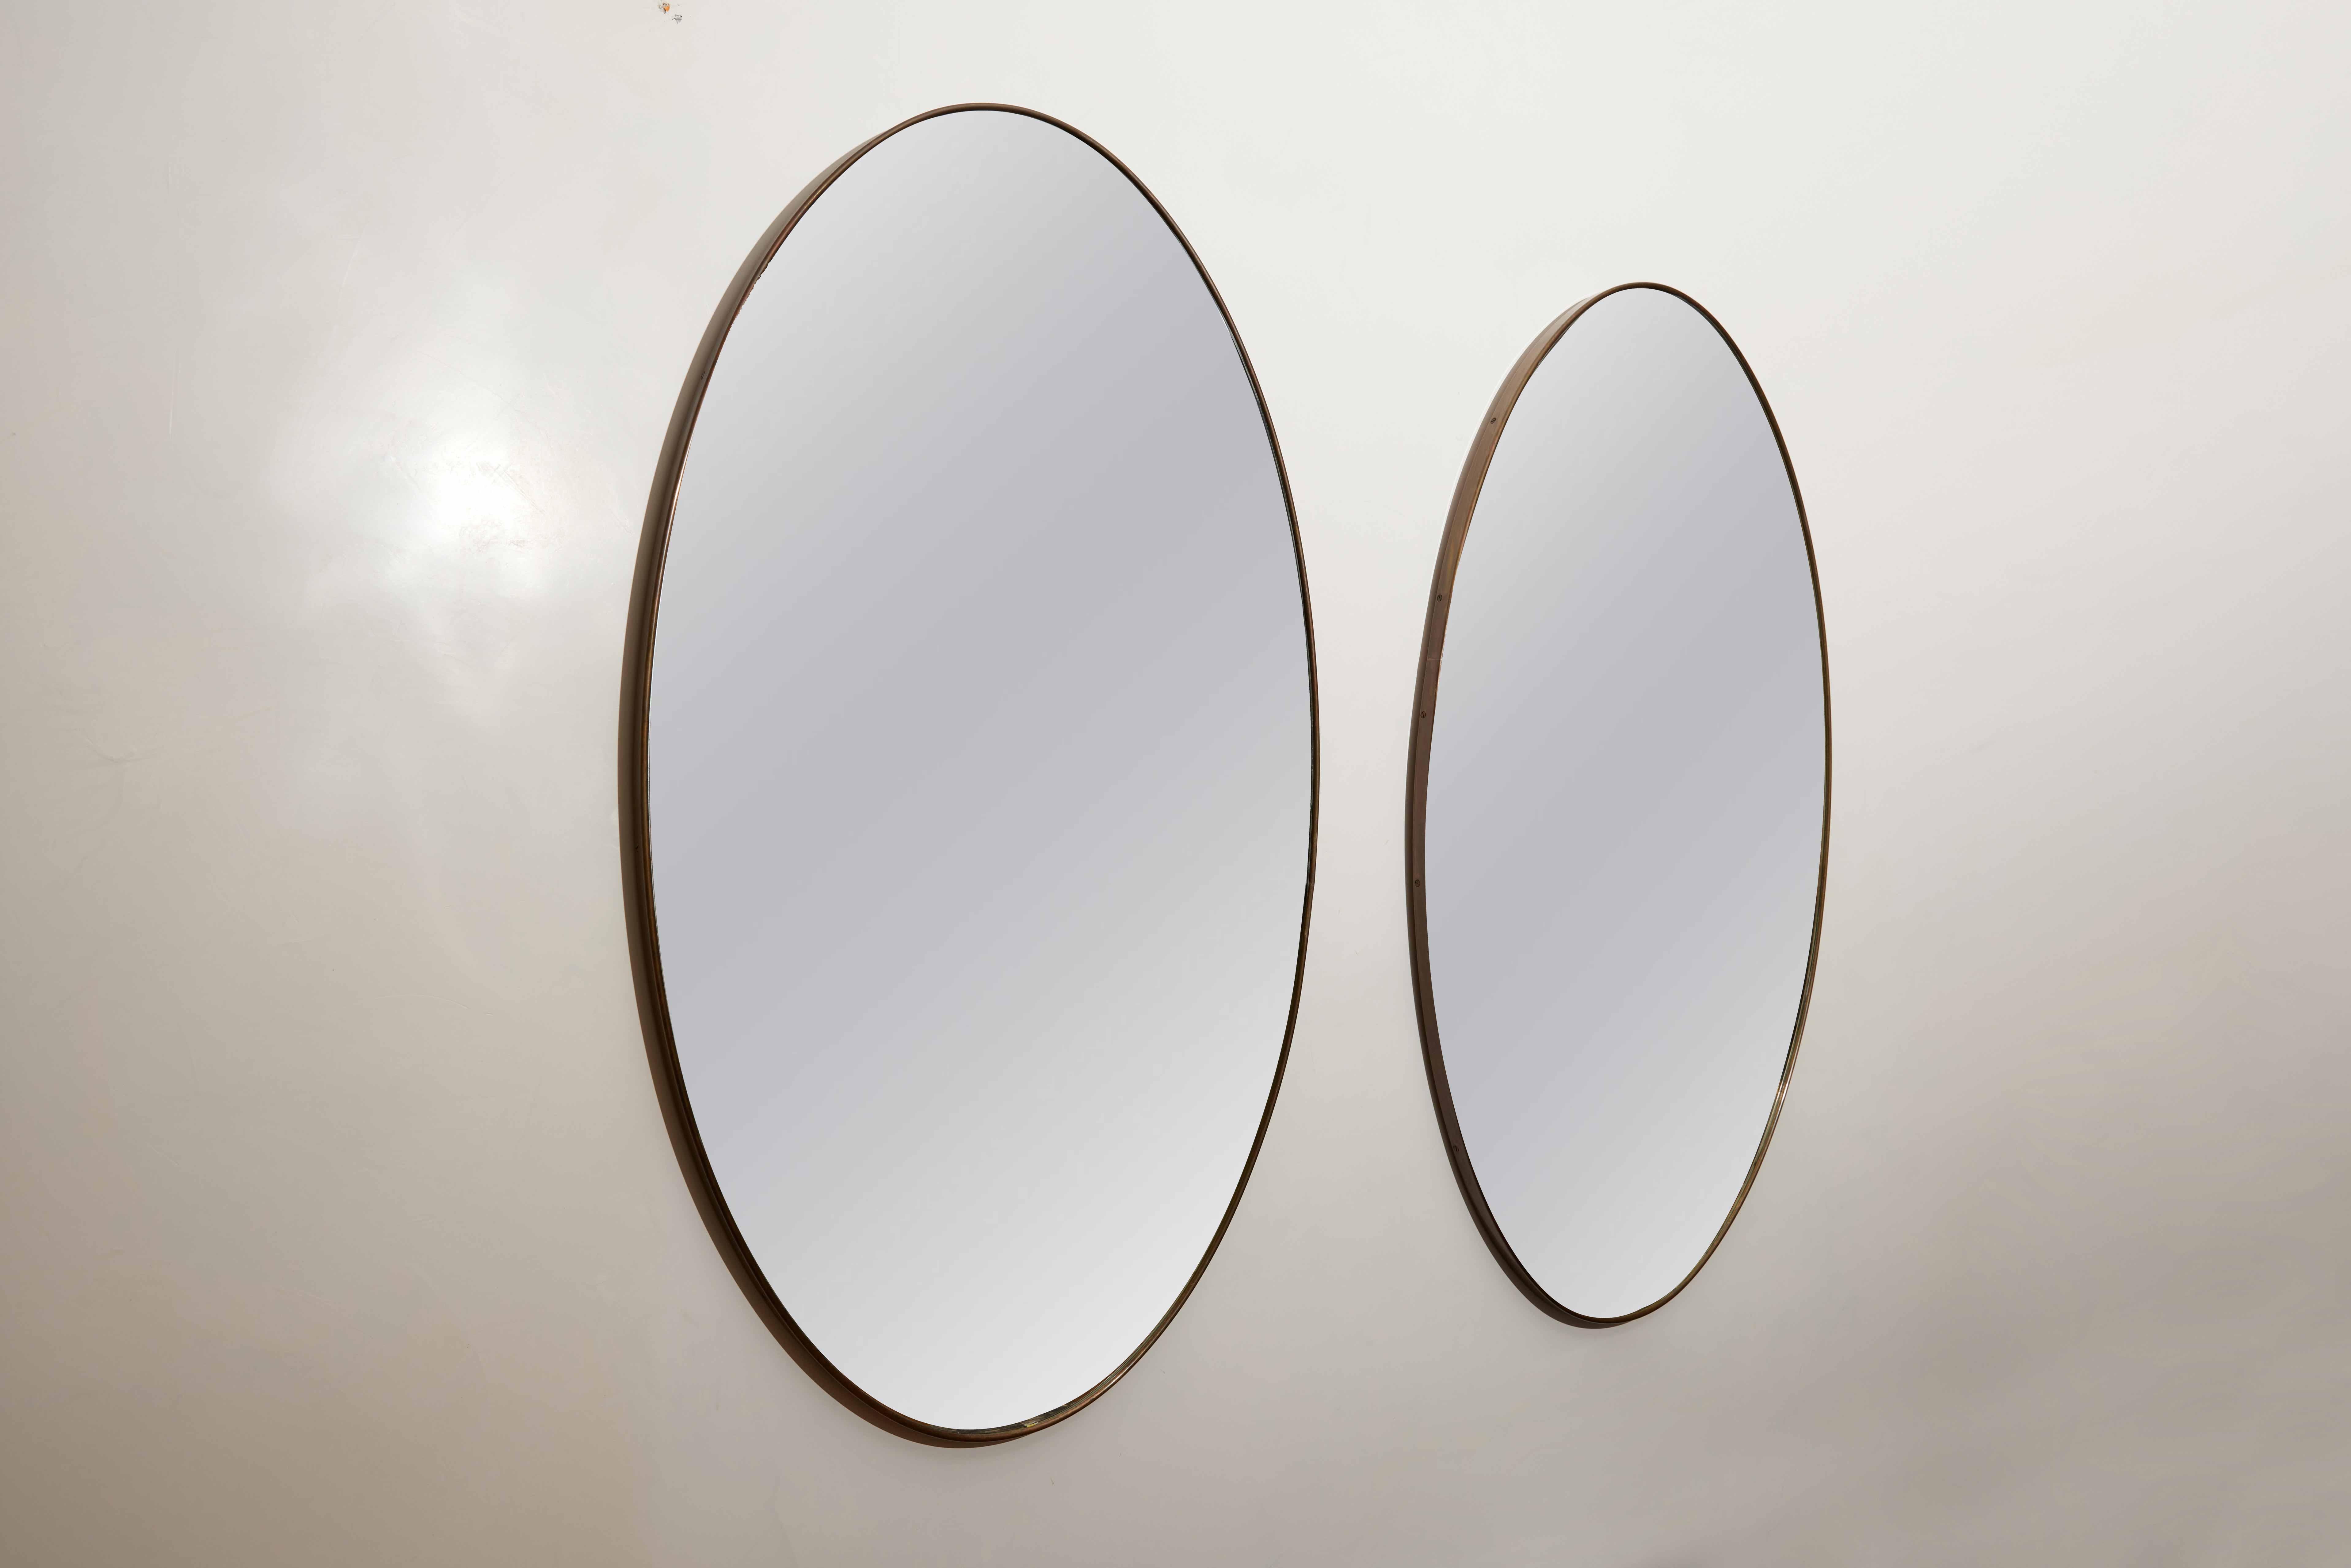 Zwei modernistische italienische ovale Wandspiegel aus Messing, Italien, um 1950

Dieses Paar ovaler Messingspiegel im italienischen Modernismus bietet einen großen Maßstab, der jedem Innenraum Licht und Tiefe verleiht. Diese Spiegel wurden in den